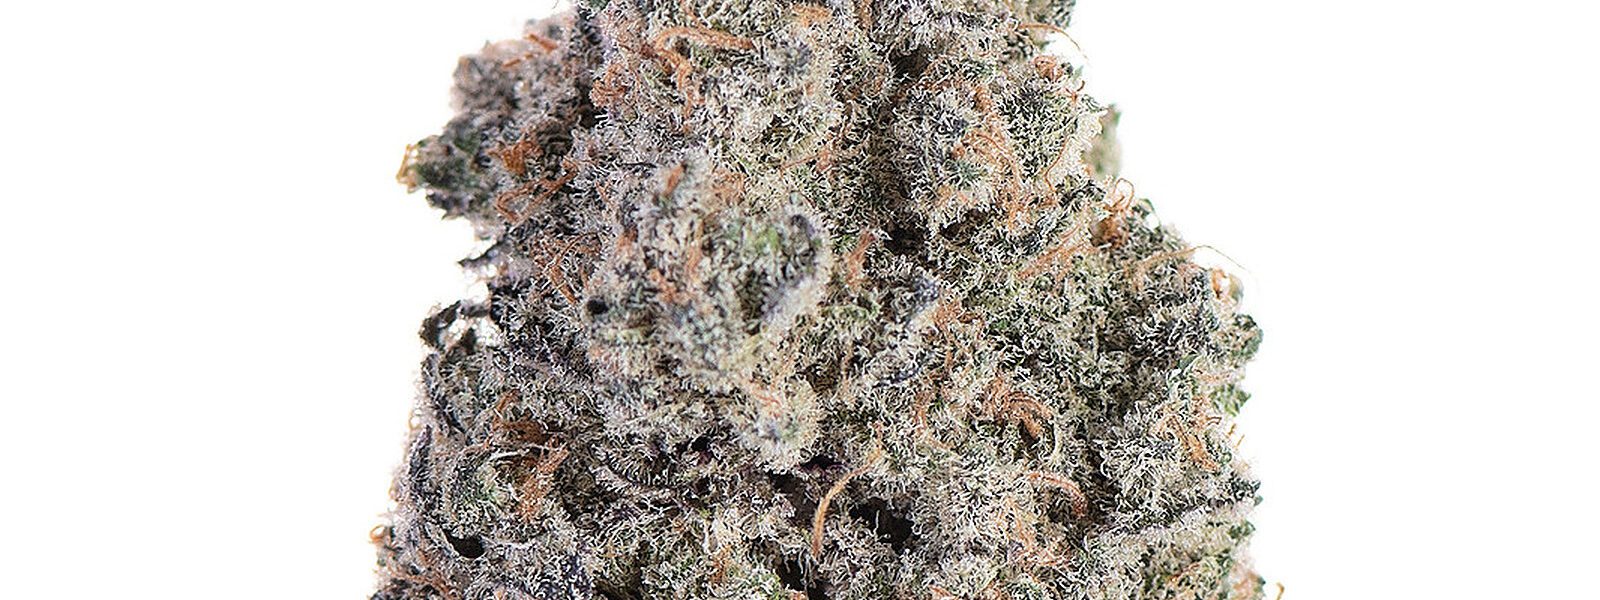 White Truffle hybrid marijuana strain